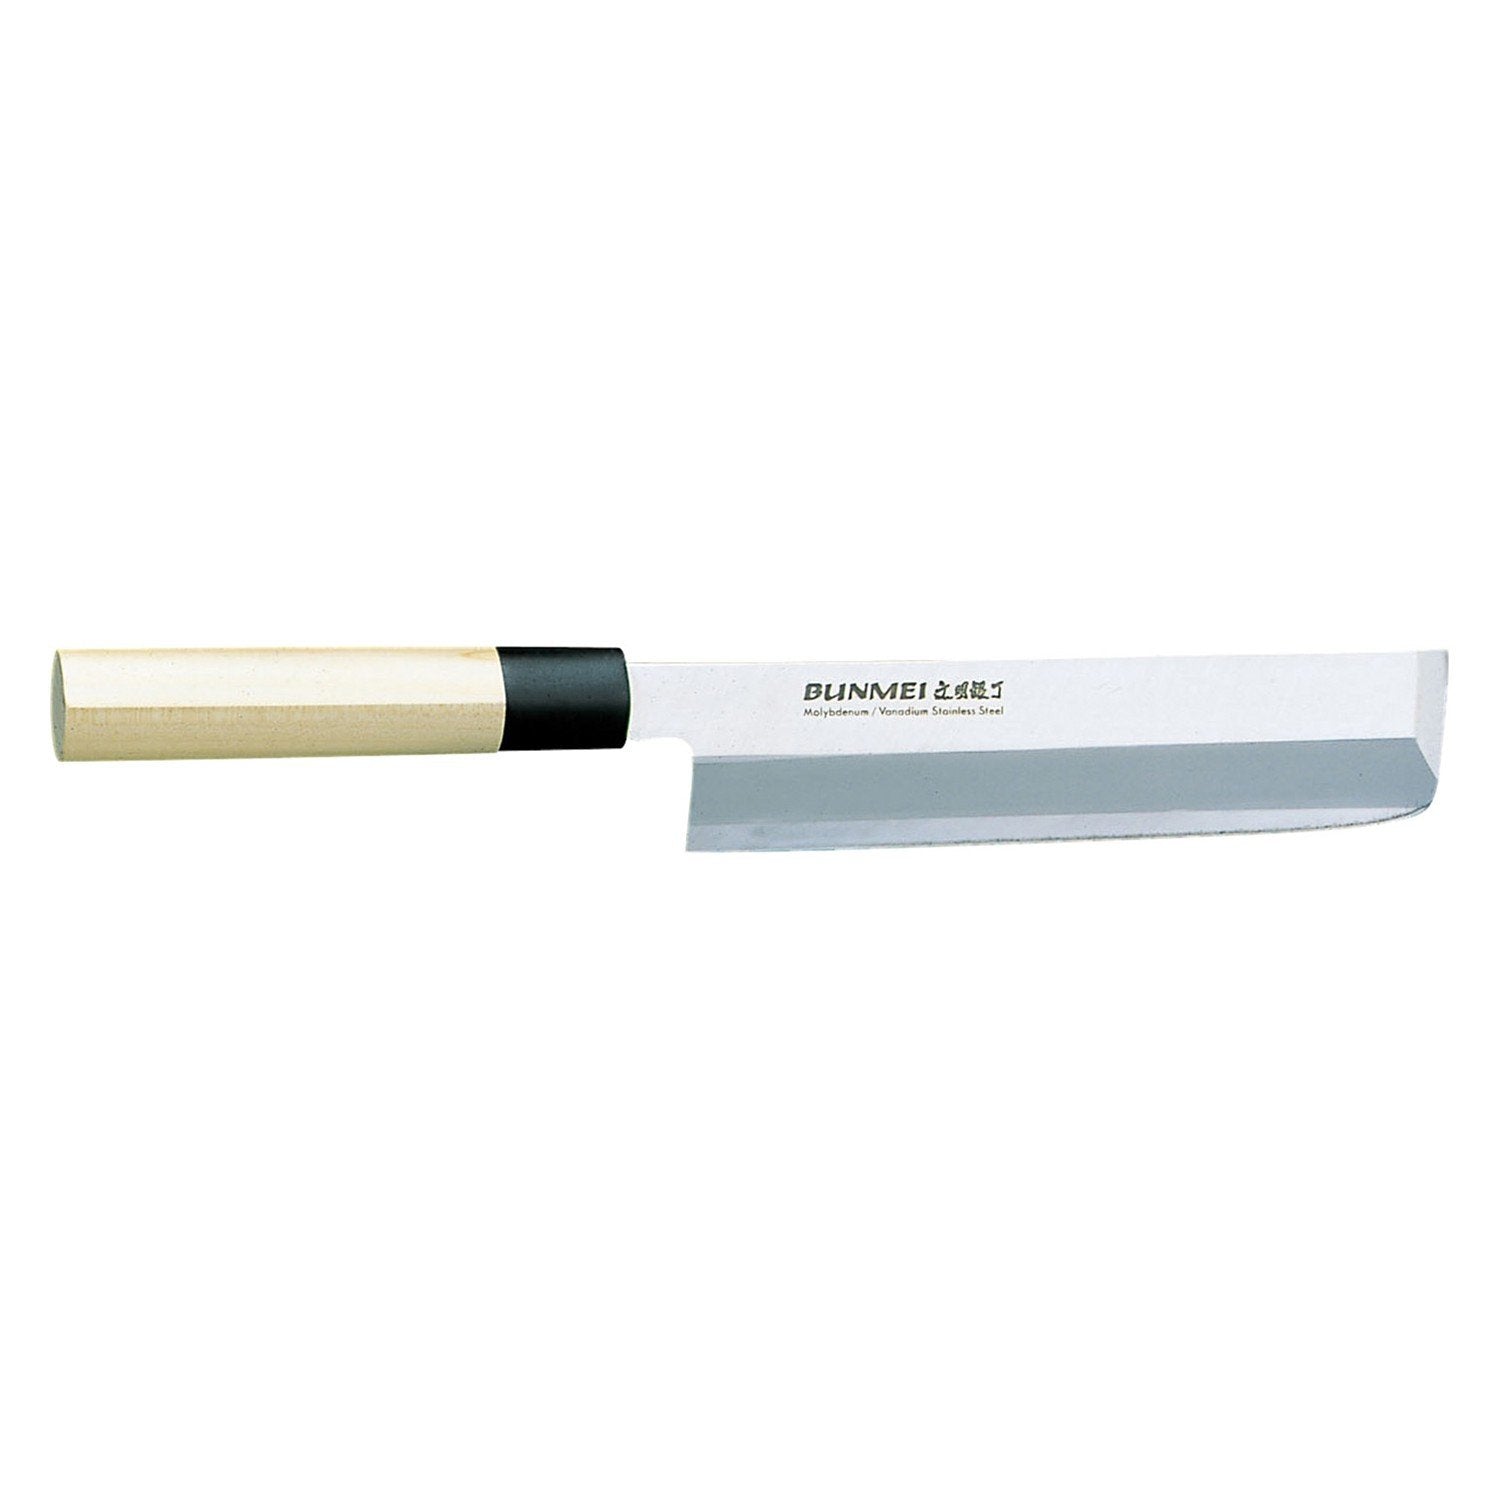 Global Bunmei Usuba Vegetabilske kniv, 1802/225 mm